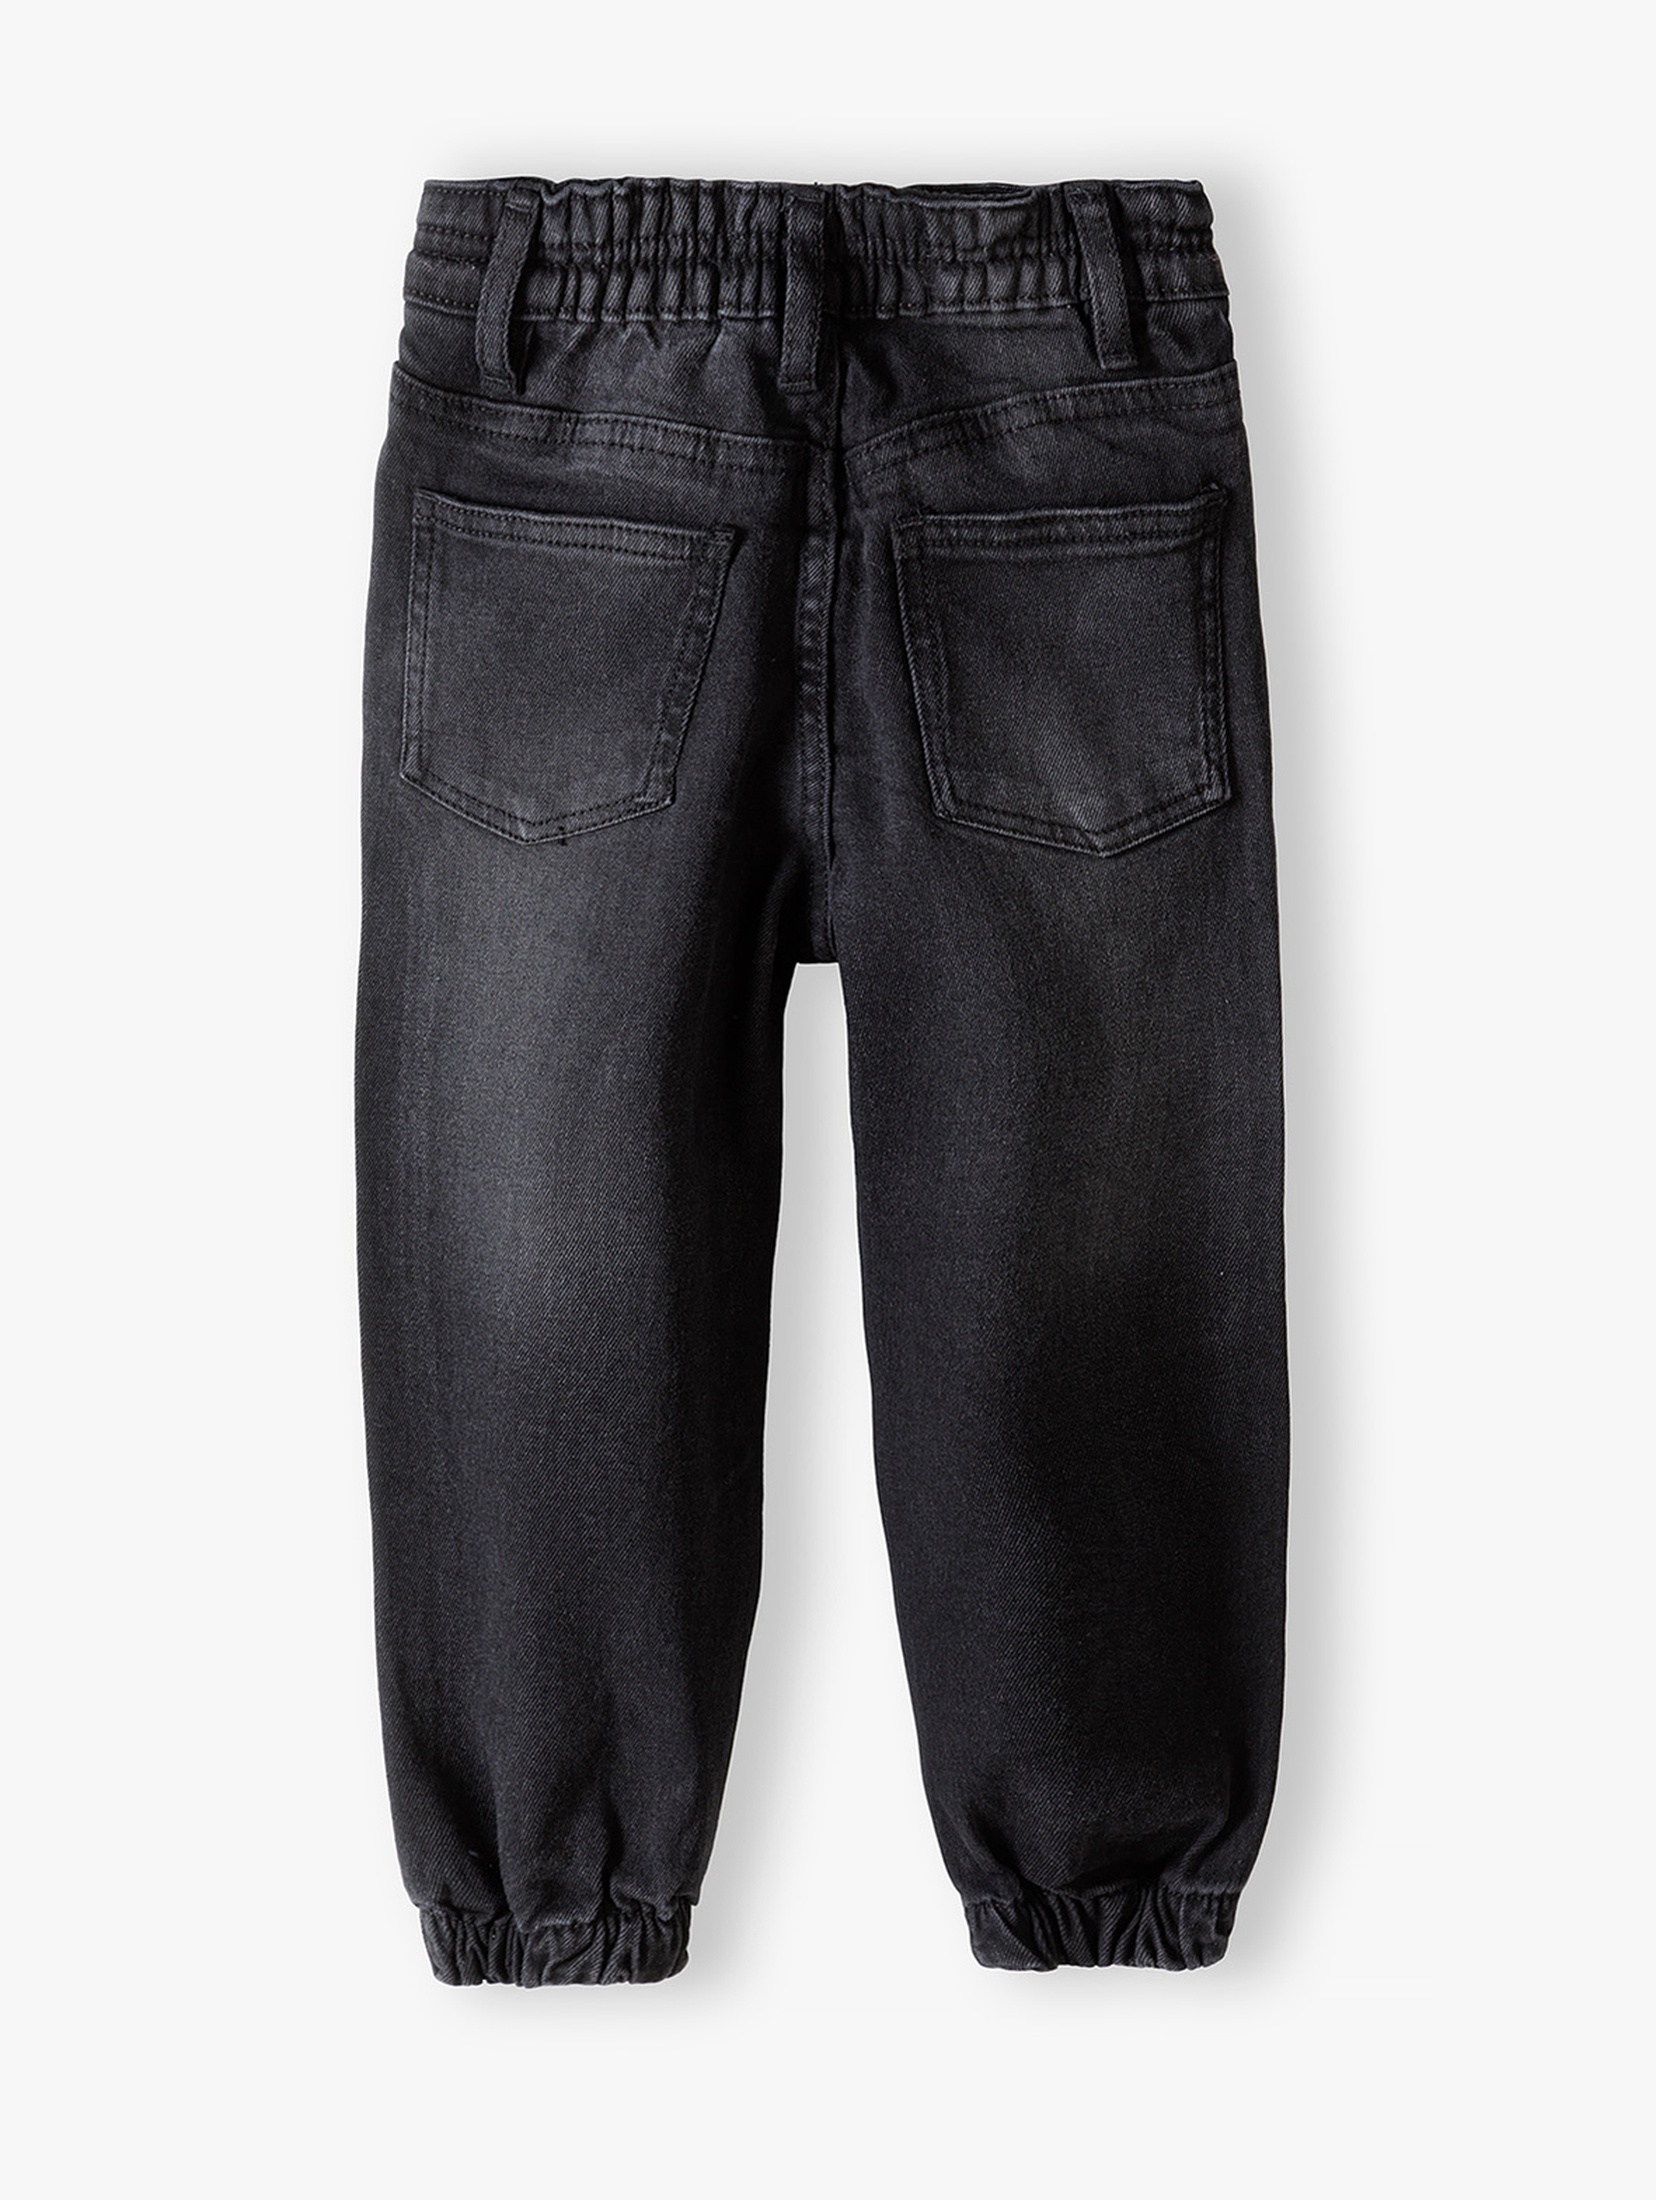 Spodnie jeansowe typu joggery dziewczęce czarne